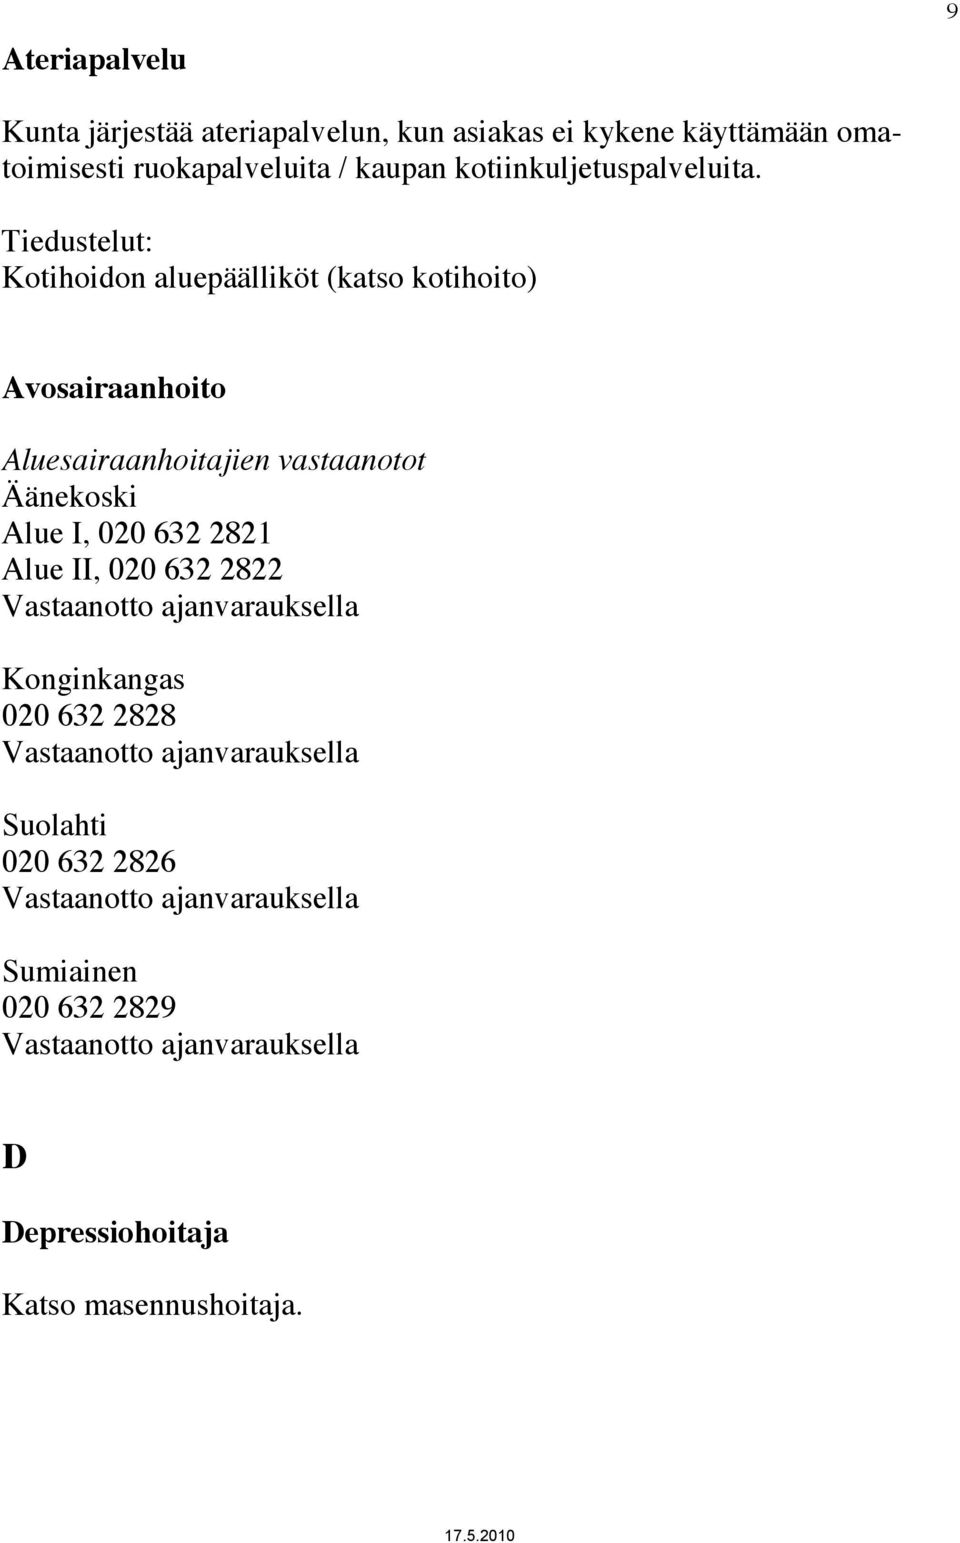 Tiedustelut: Kotihoidon aluepäälliköt (katso kotihoito) Avosairaanhoito Aluesairaanhoitajien vastaanotot Äänekoski Alue I, 020 632